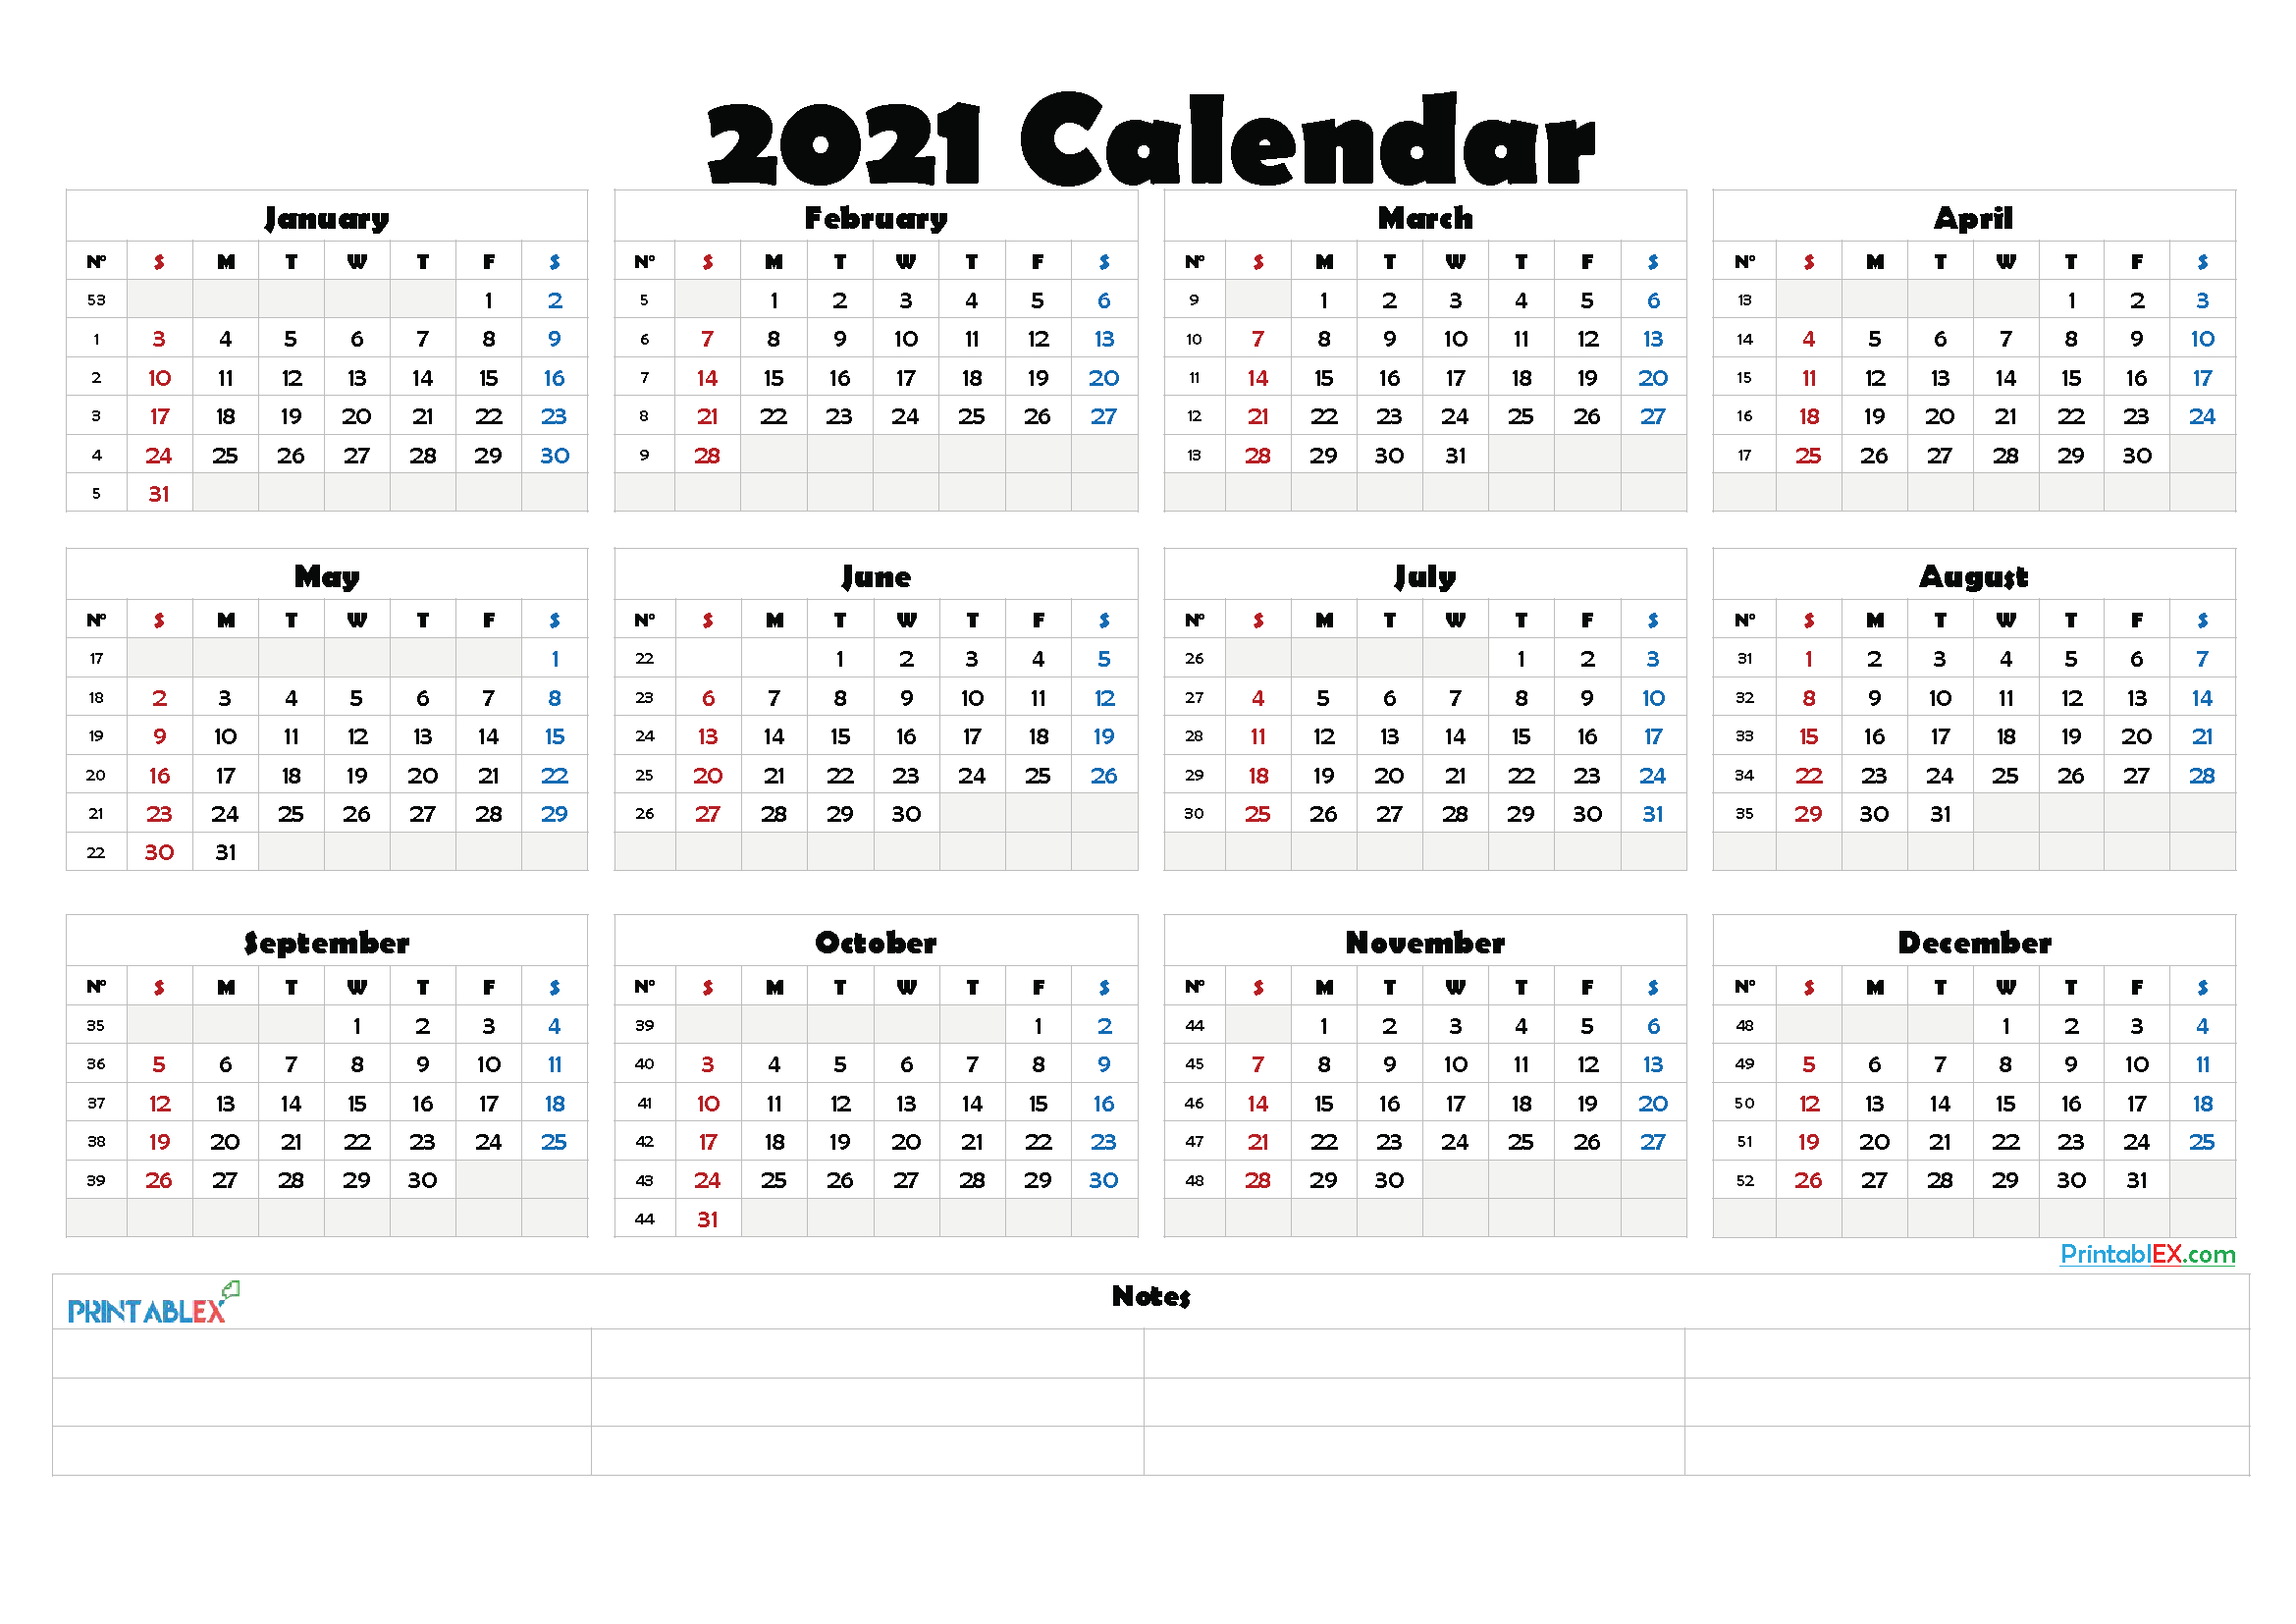 2021 Calendar With Week Number Printable Free - Week-2021 Yearly Calendar Template Printable Free